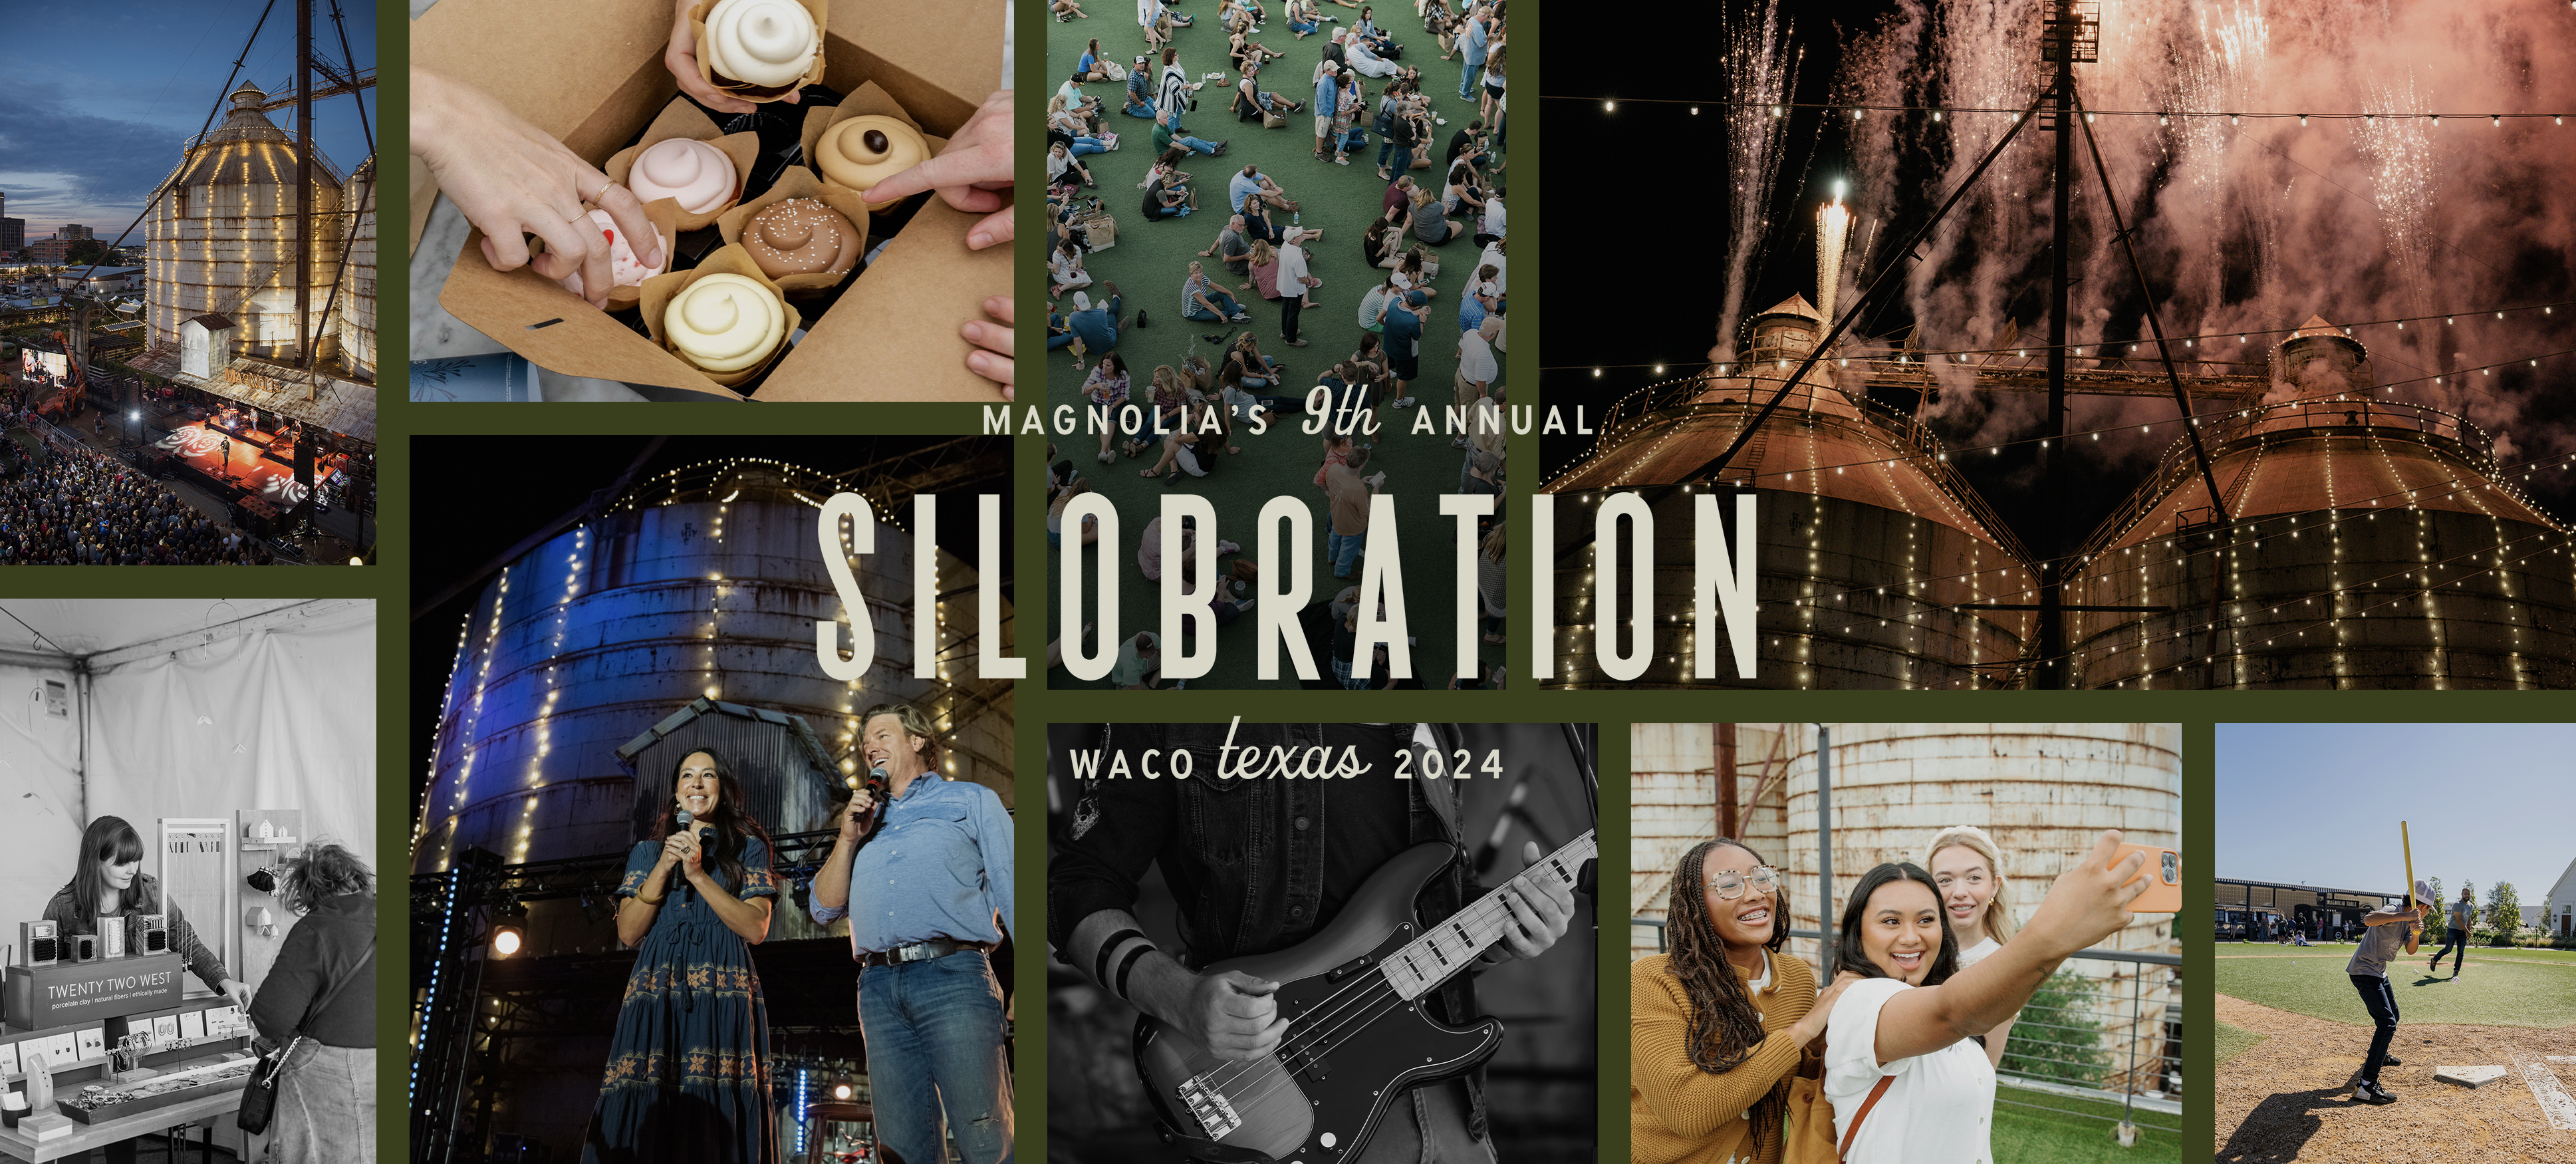 Magnolia's 9th Annual Silobration, Waco, Texas 2024